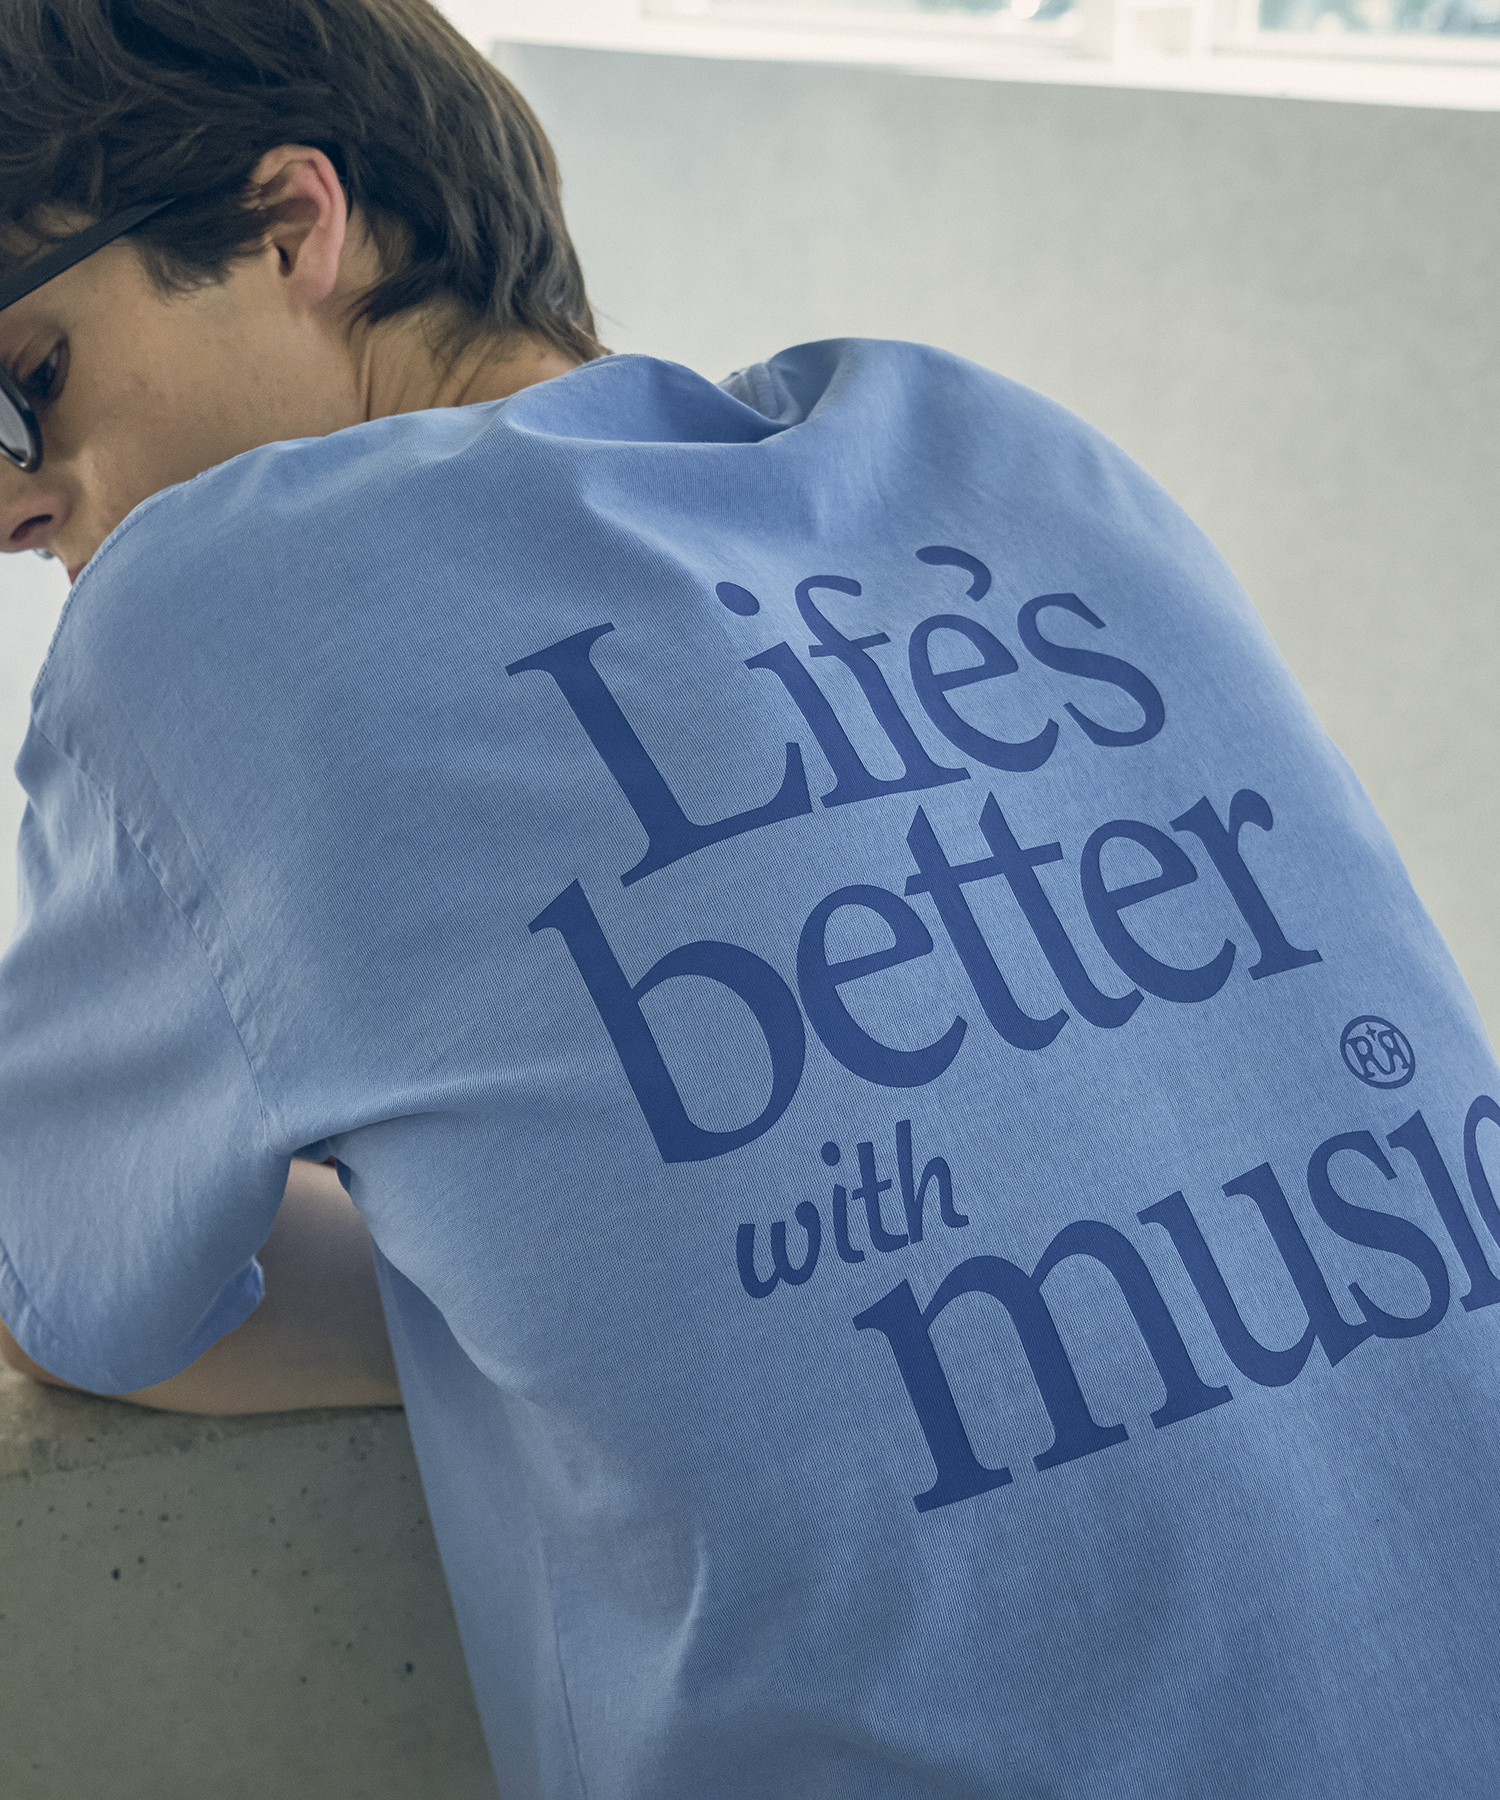 [5/22 예약발송]T20046 Music printing T-shirt_Sky blue